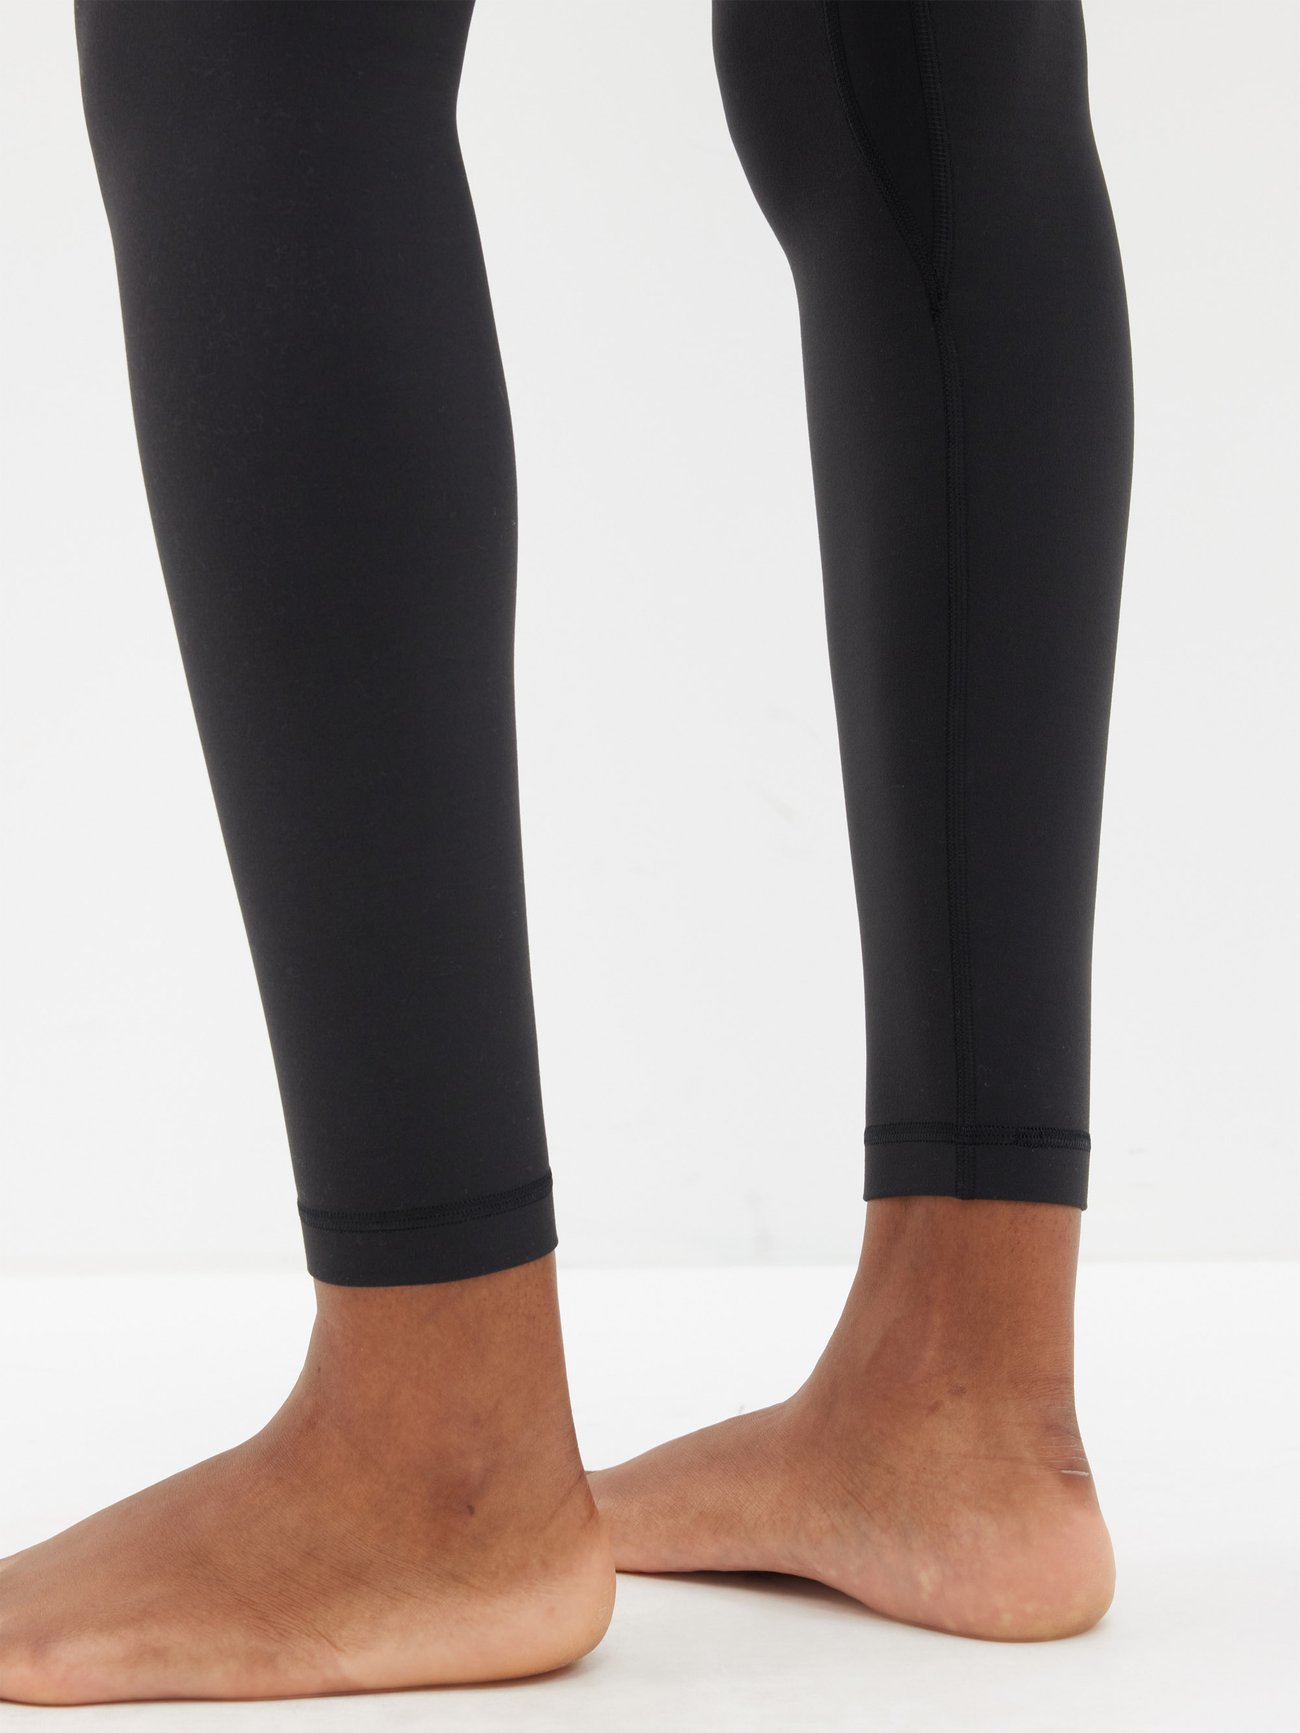 Lululemon Align Women's Leggings - Black (W6BGJS) for sale